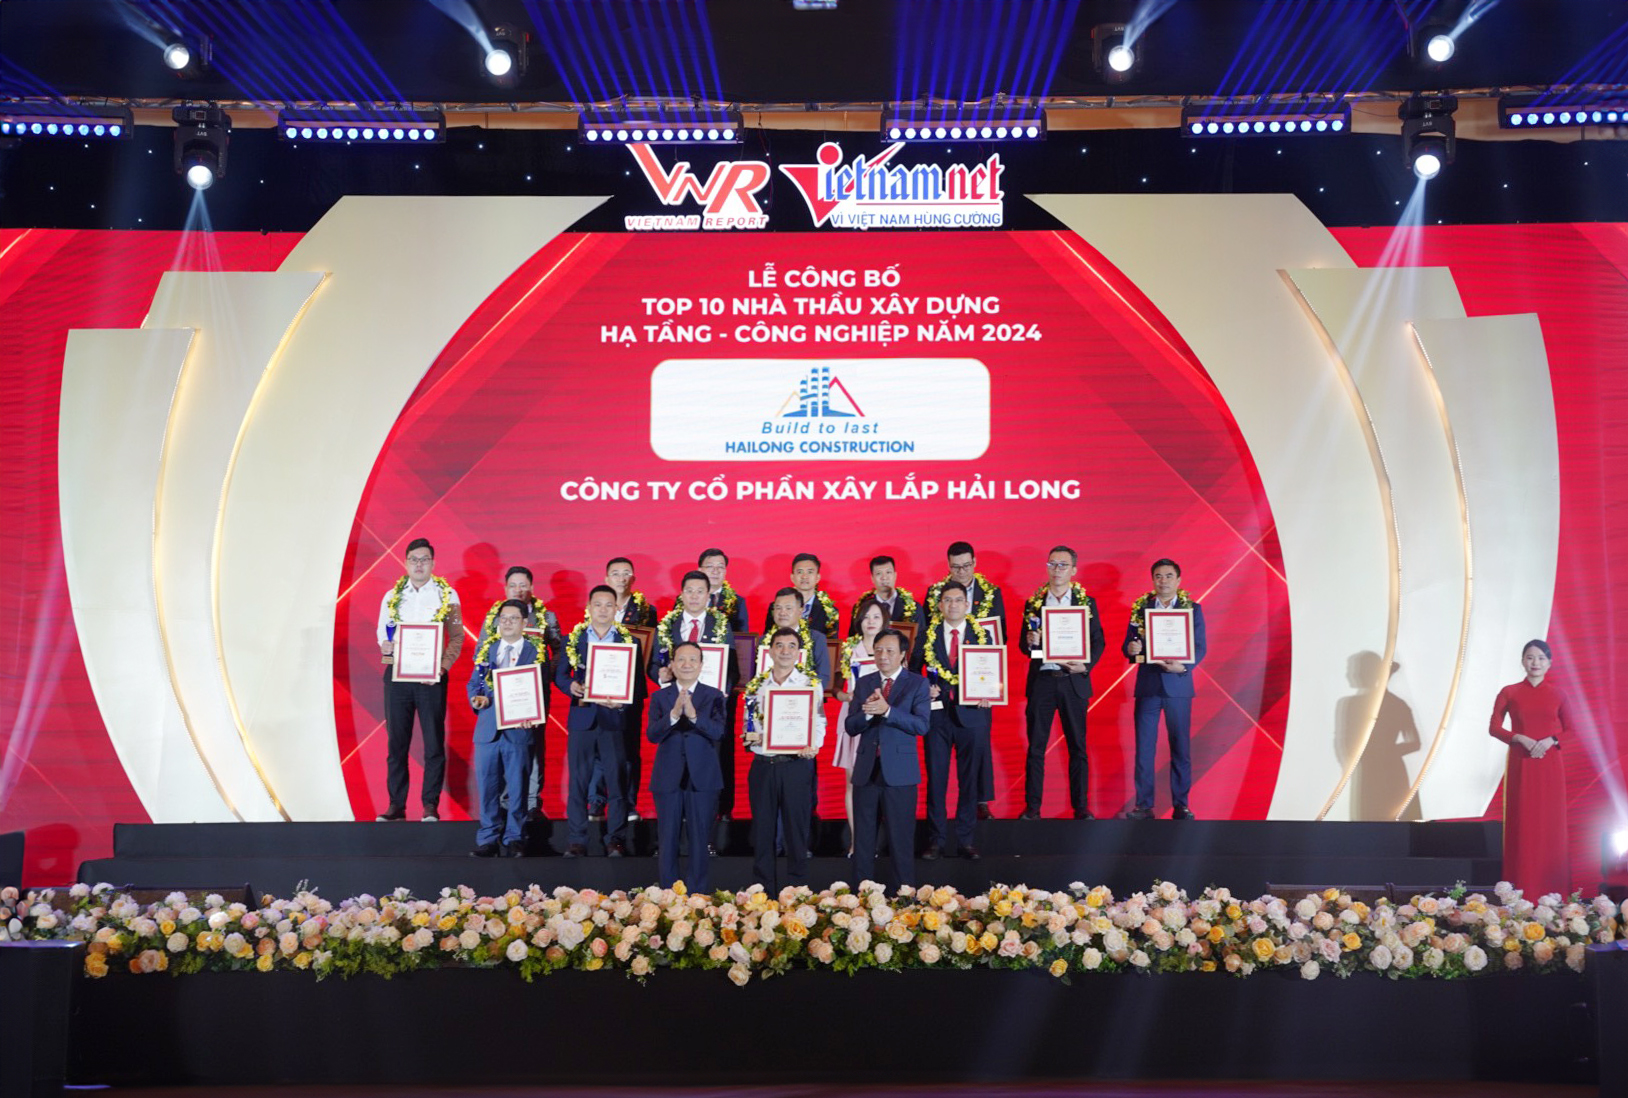 Xây lắp Hải Long - Hành trình 25 năm chinh phục thành công Top 10 Nhà thầu Xây dựng Hạ tầng - Công nghiệp uy tín Việt Nam